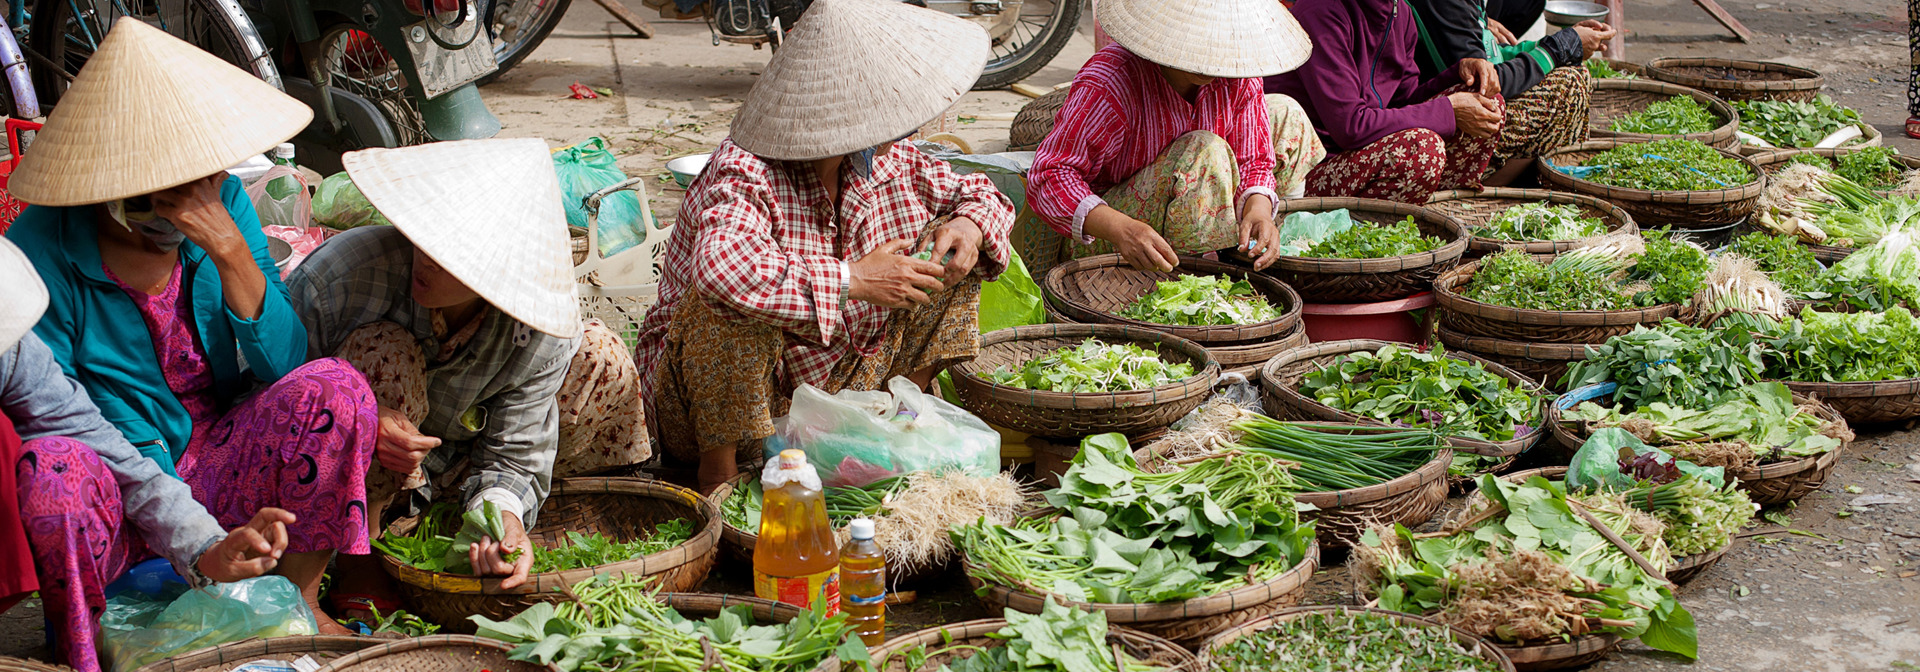 Vietnam - hoi an_marked_01